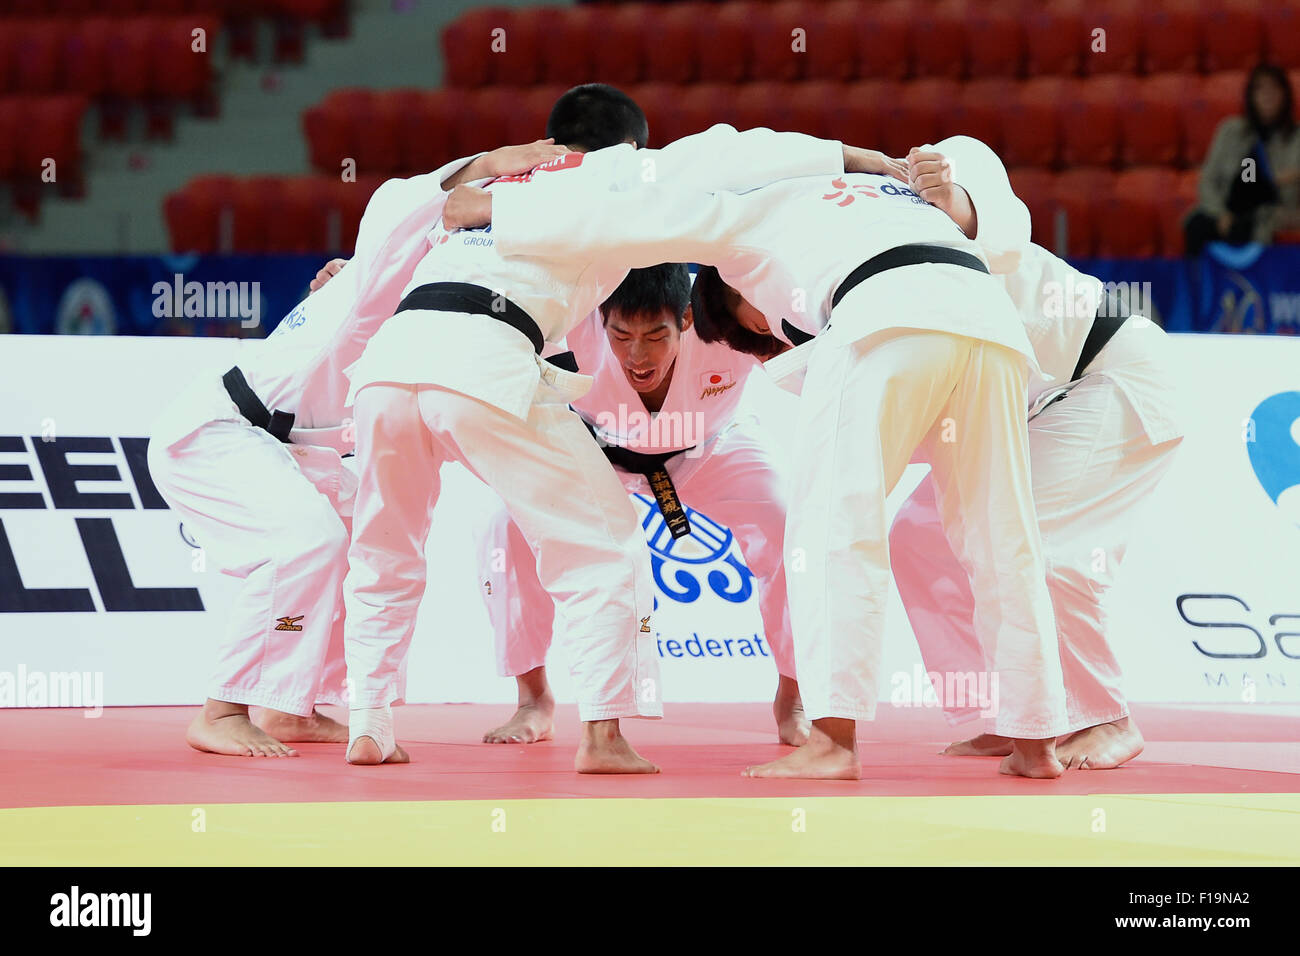 Groupe de l'équipe du Japon (JPN), le 30 août 2015 - Judo : le championnat du monde de judo l'équipe Astana 2015 Men's match final à l'ALAU Ice Palace à Astana, Kazakhstan. (Photo par AFLO SPORT) Banque D'Images